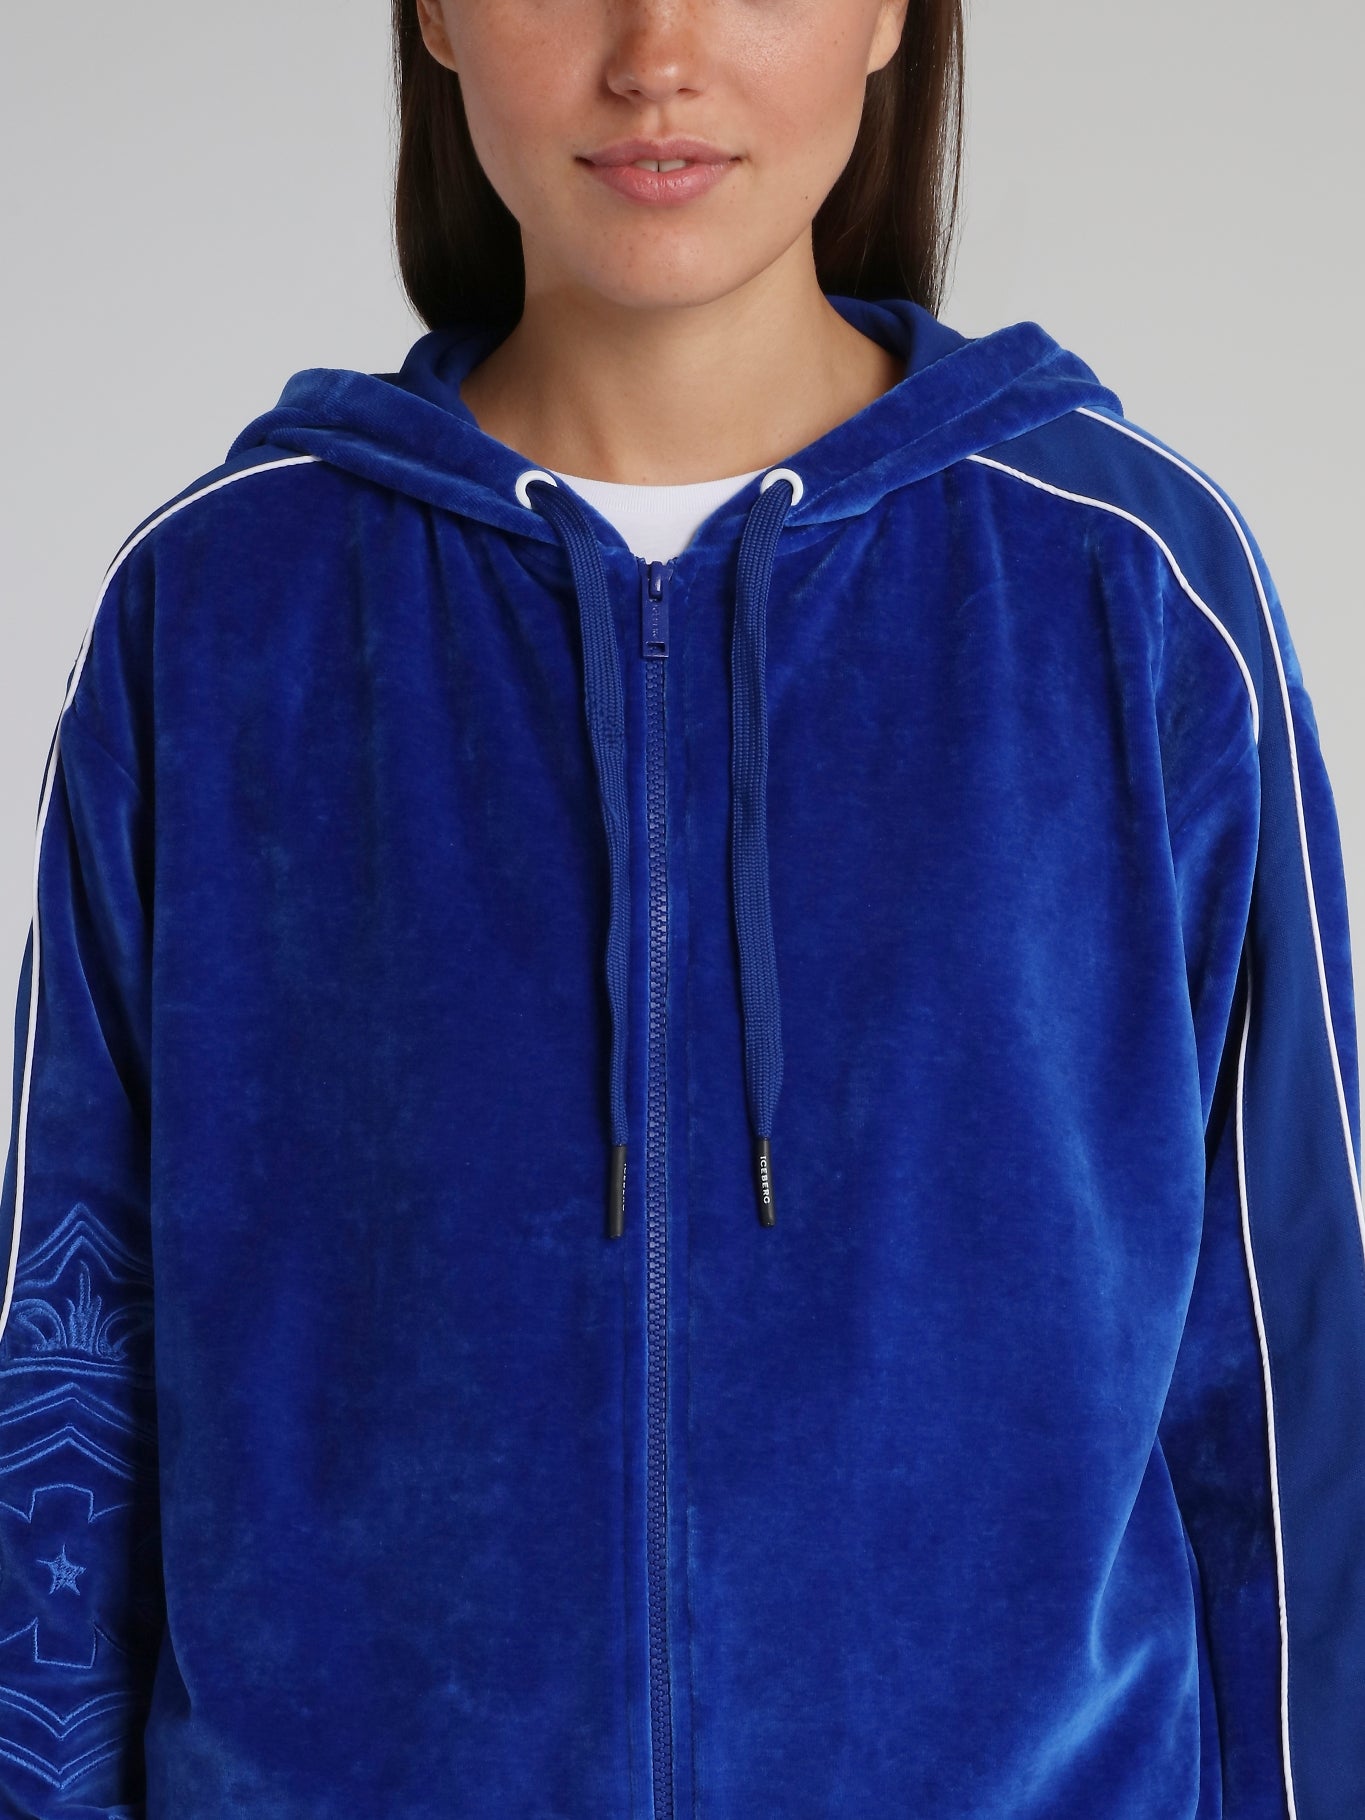 Blue Velvet Hooded Sweat Jacket